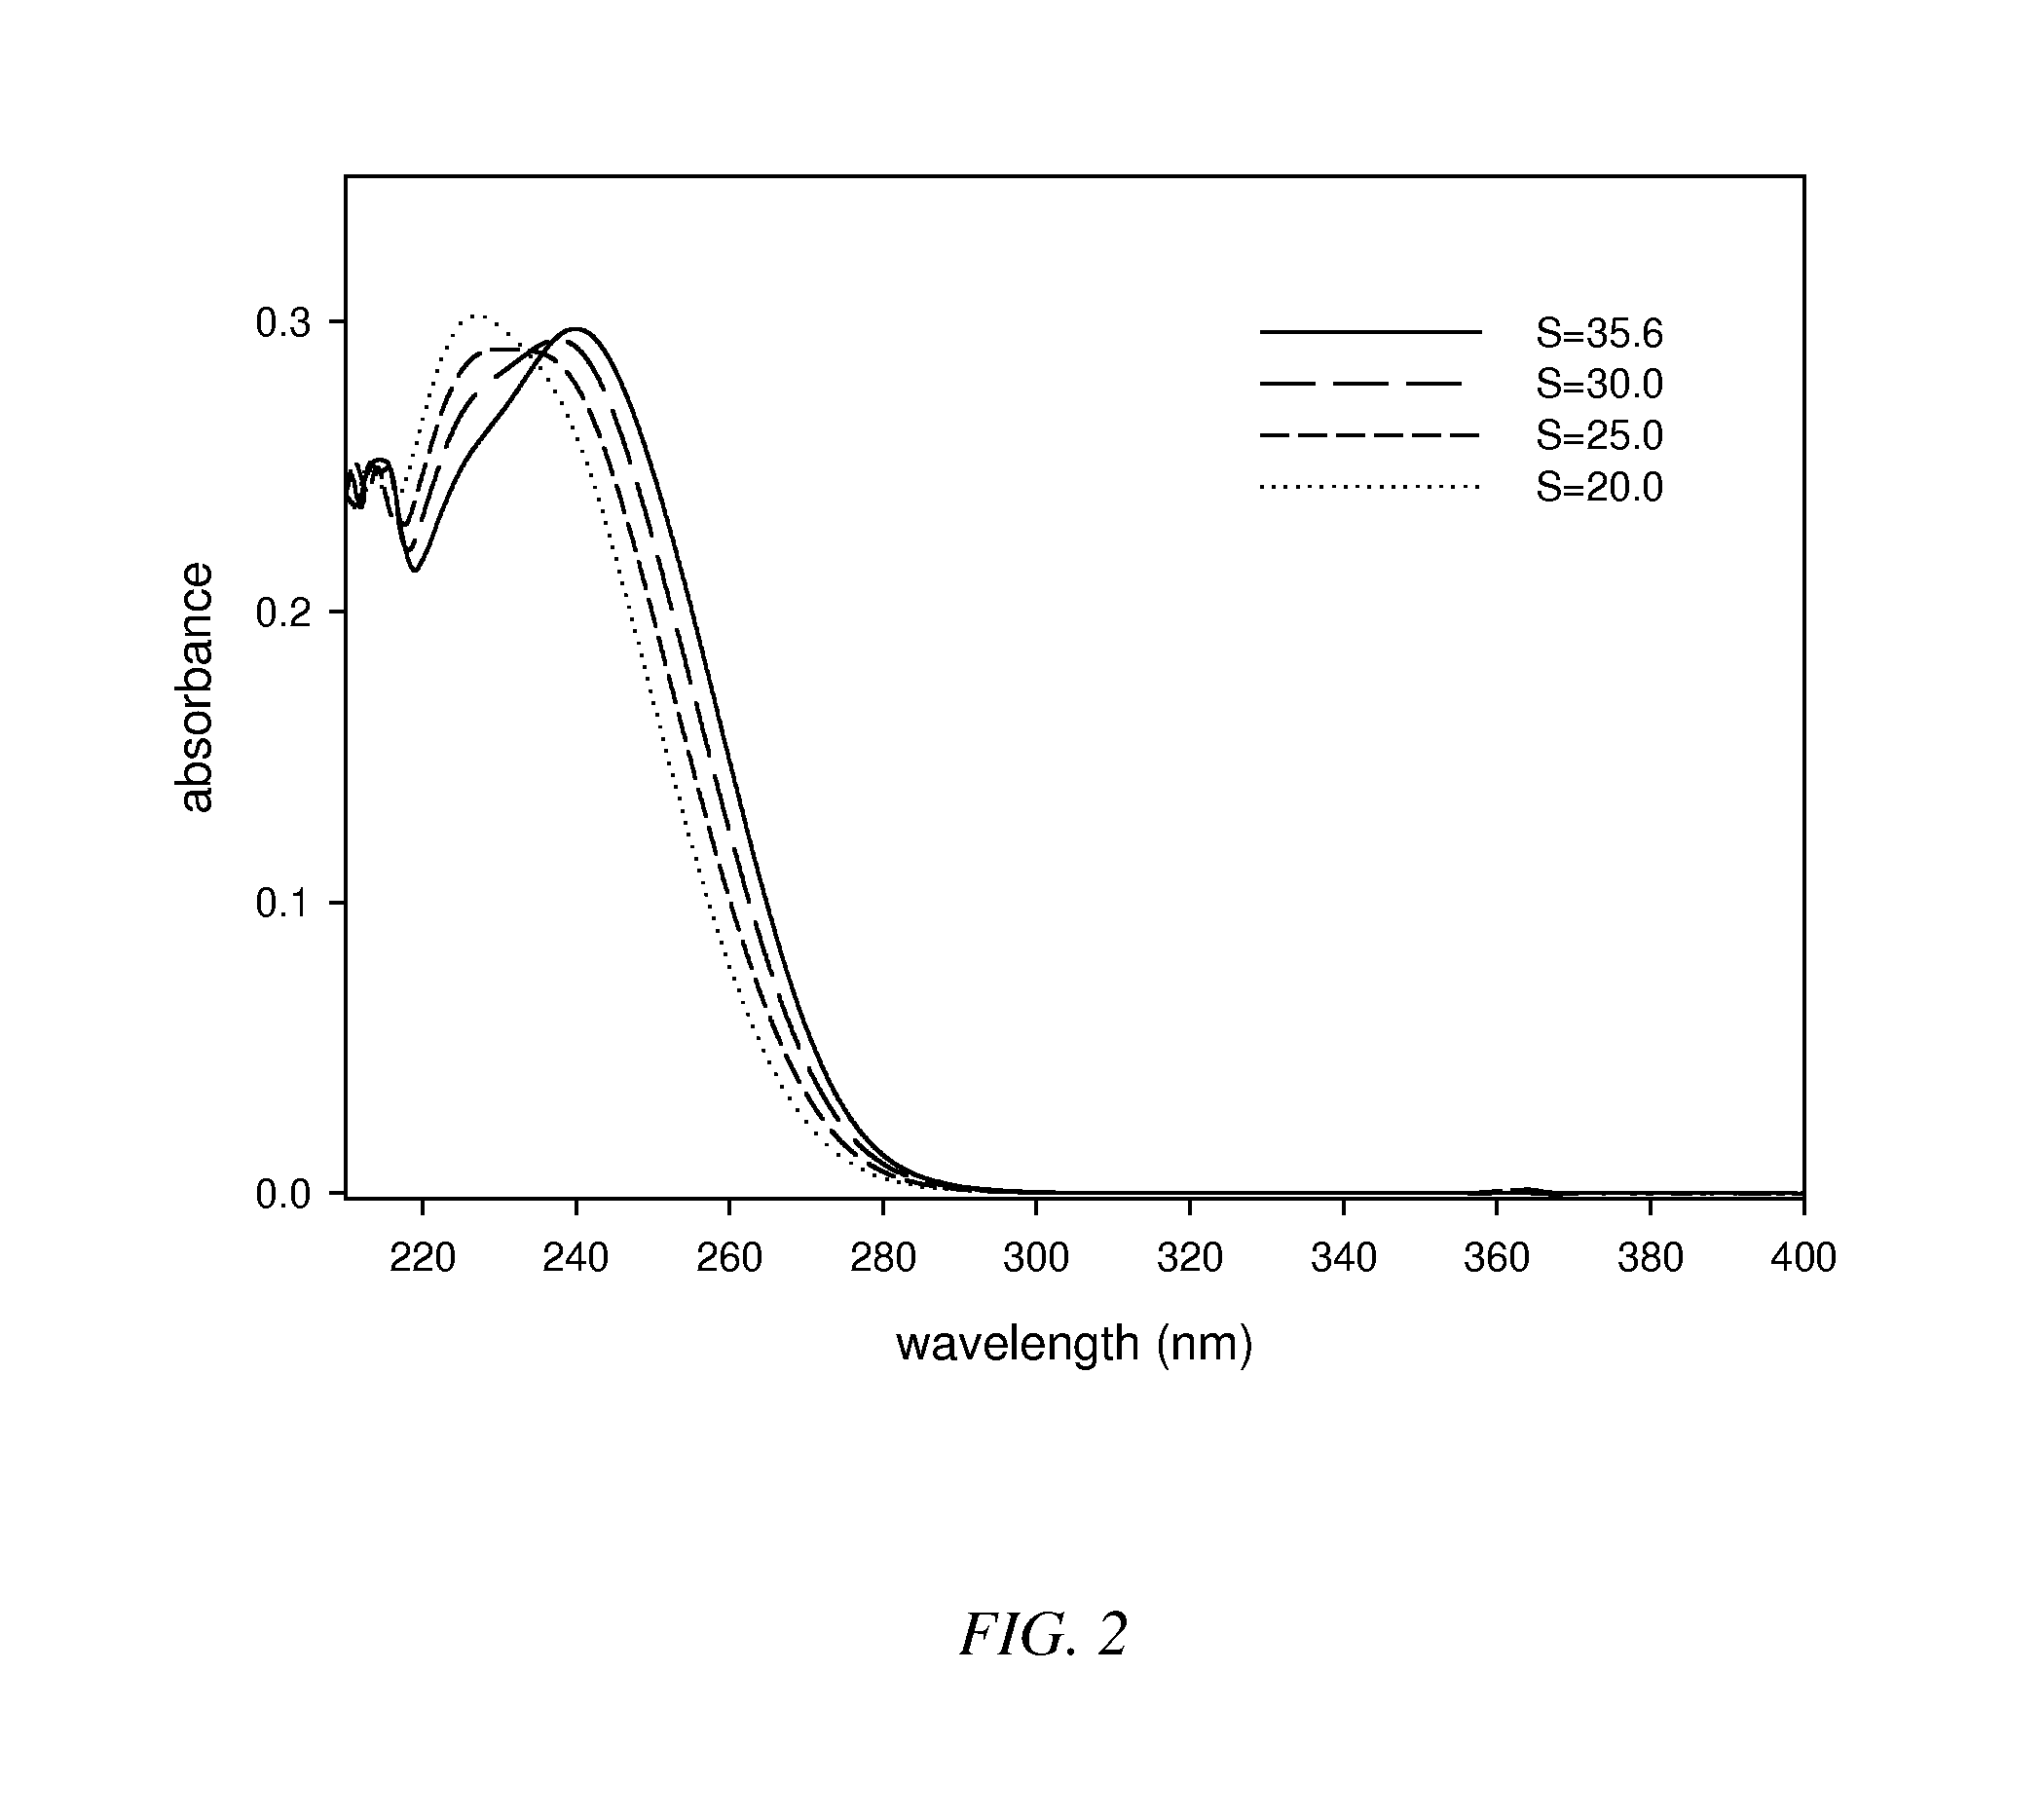 Method of performing in situ calibrated potentiometric pH measurements